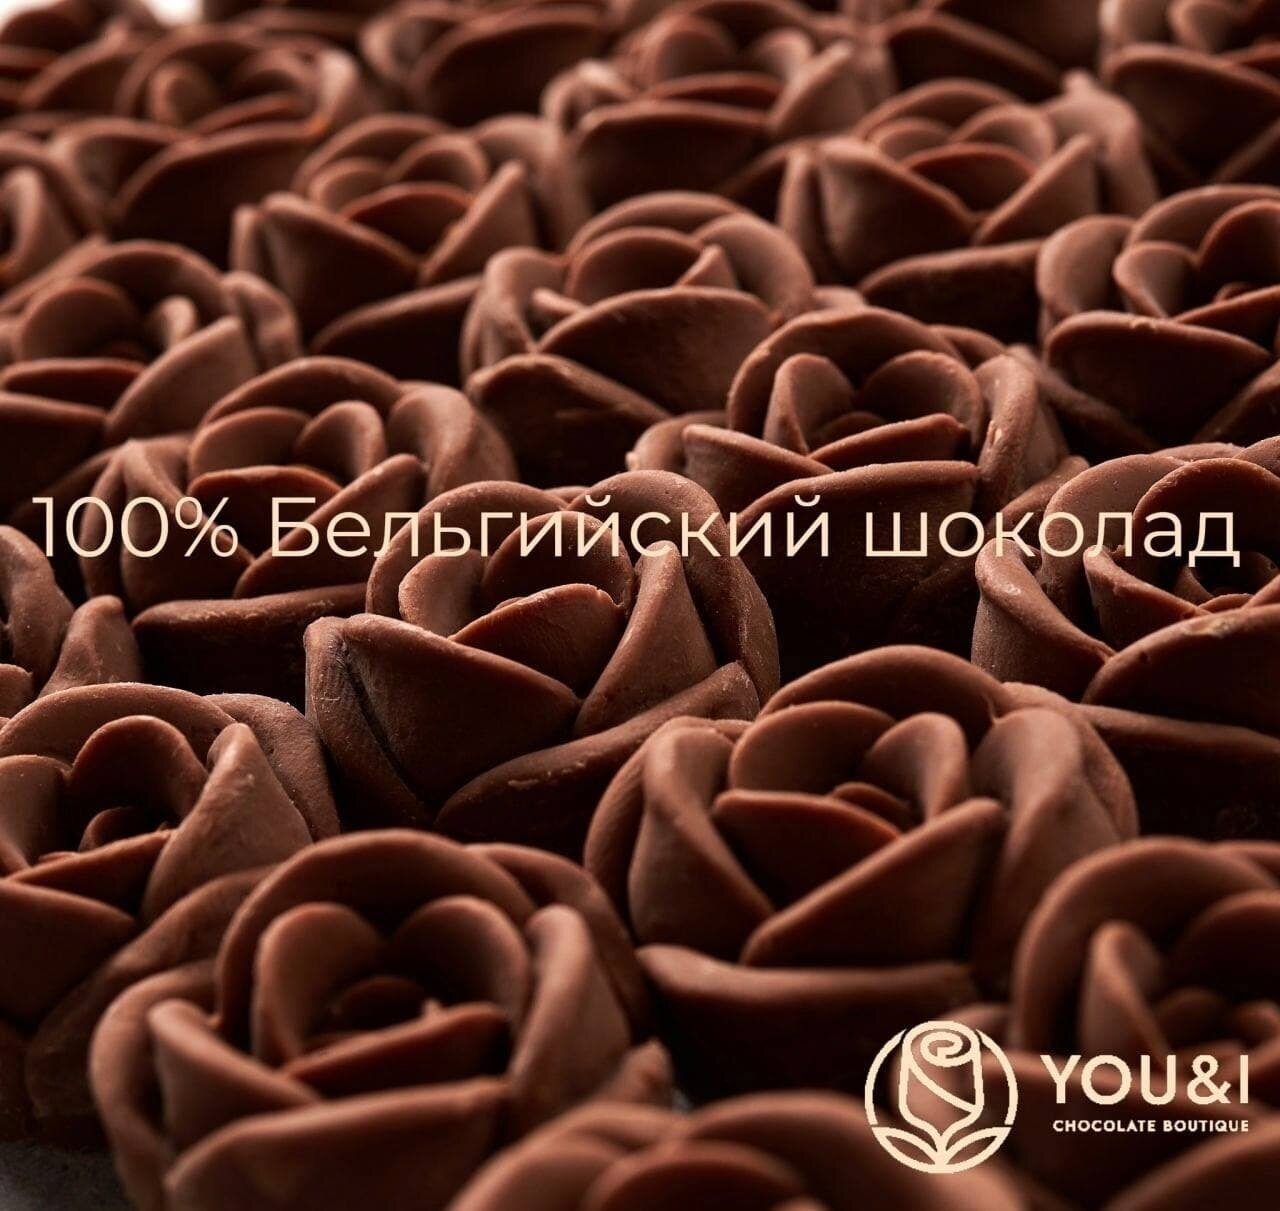 19 шоколадных роз в букете You&i бельгийский шоколад / вкусный сюрприз подарок конфет - фотография № 3